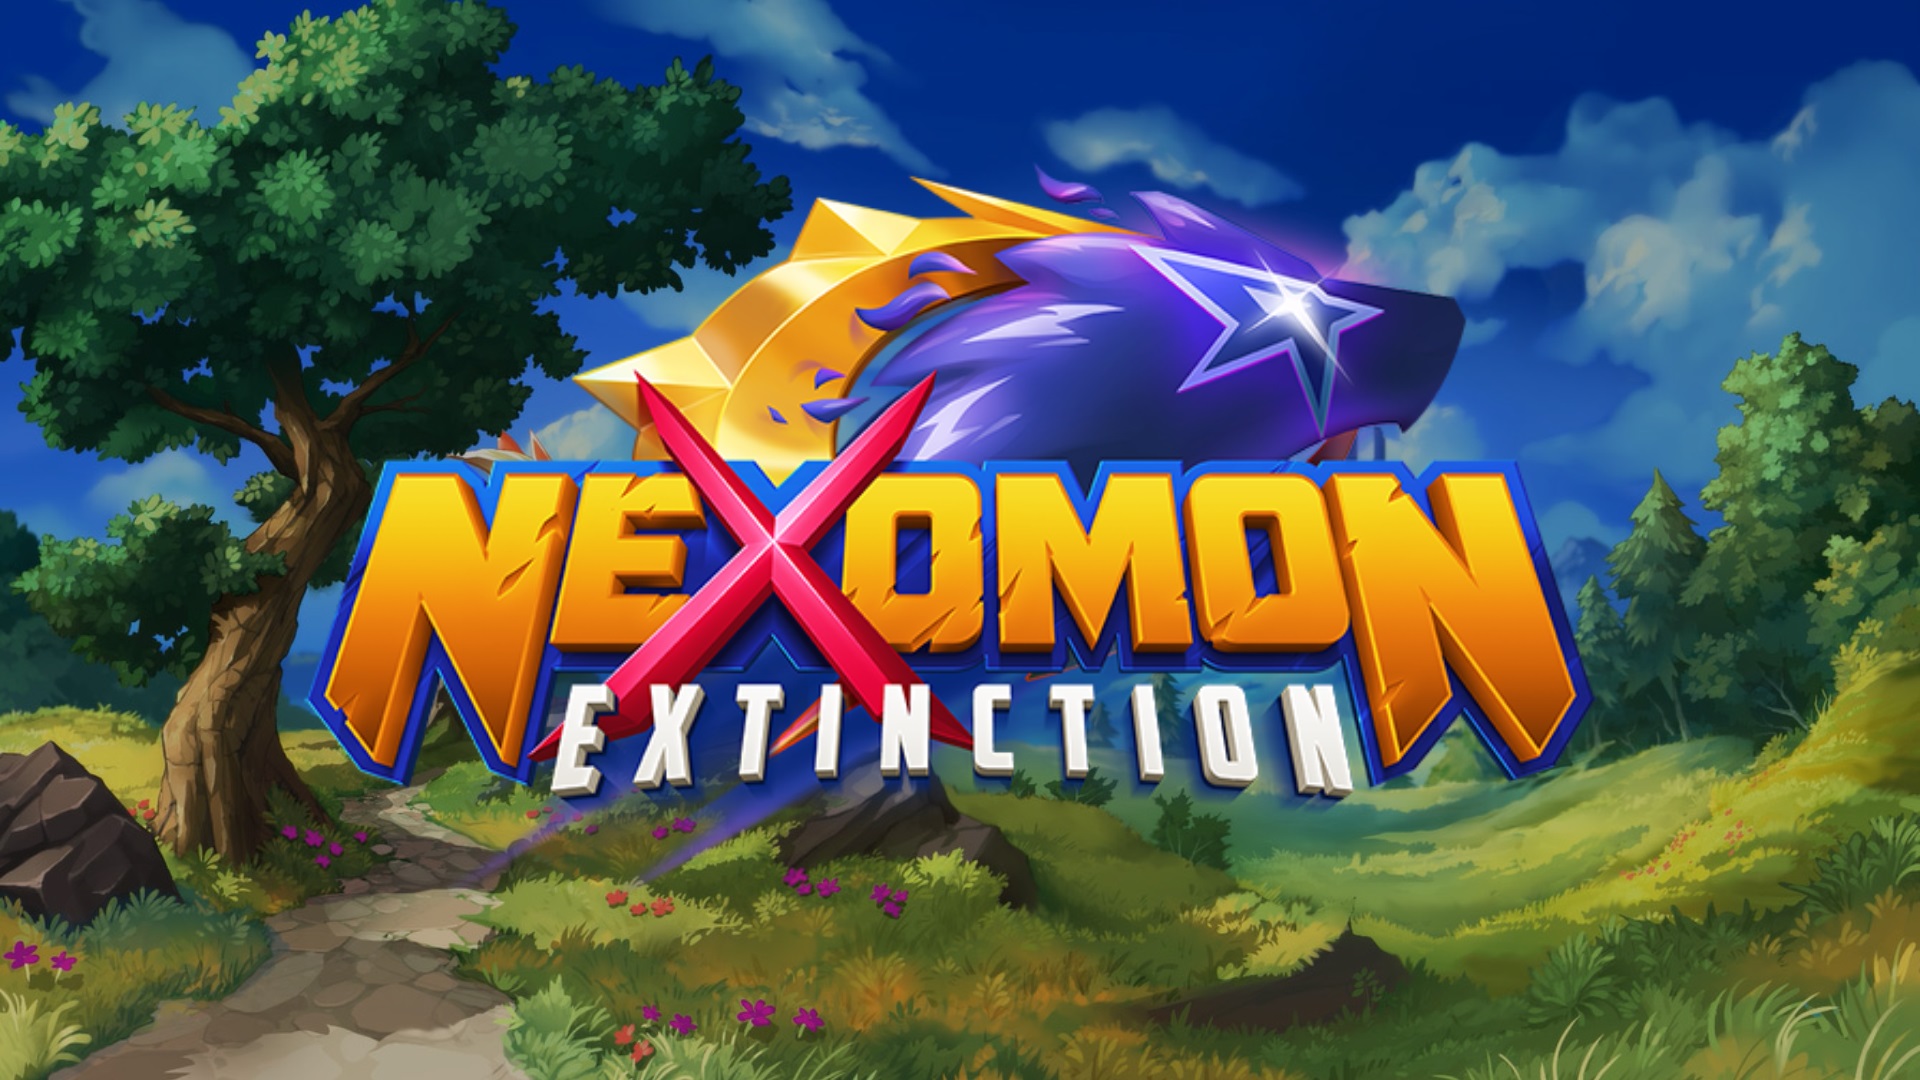 nexomon extinction ps4